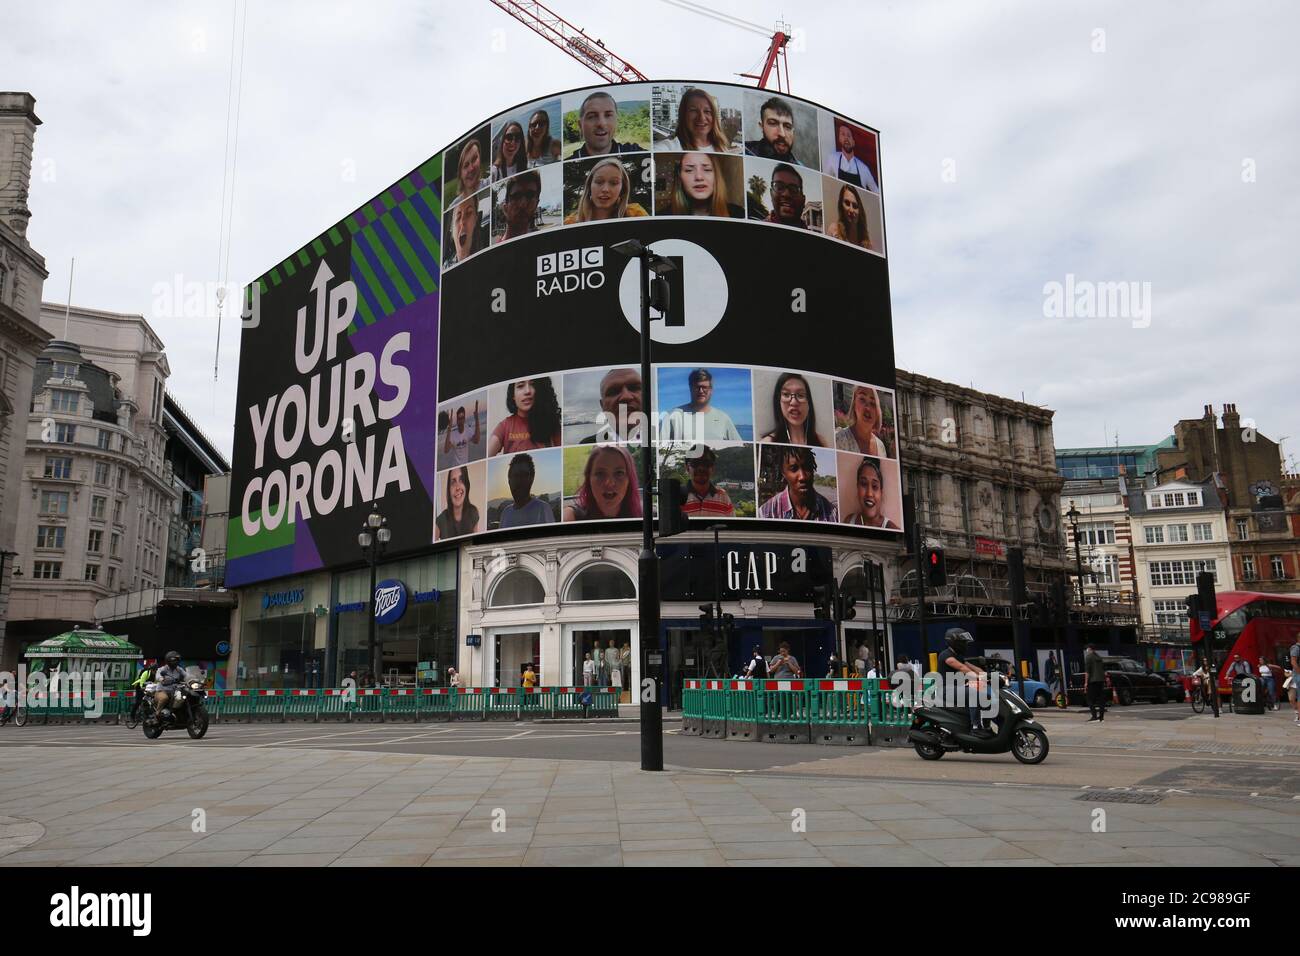 La campagna "Up Yours Corona" della radio 1 viene visualizzata sullo schermo Piccadilly Lights. Il display di 10 minuti è caratterizzato da una persona di ogni paese del mondo. Foto Stock